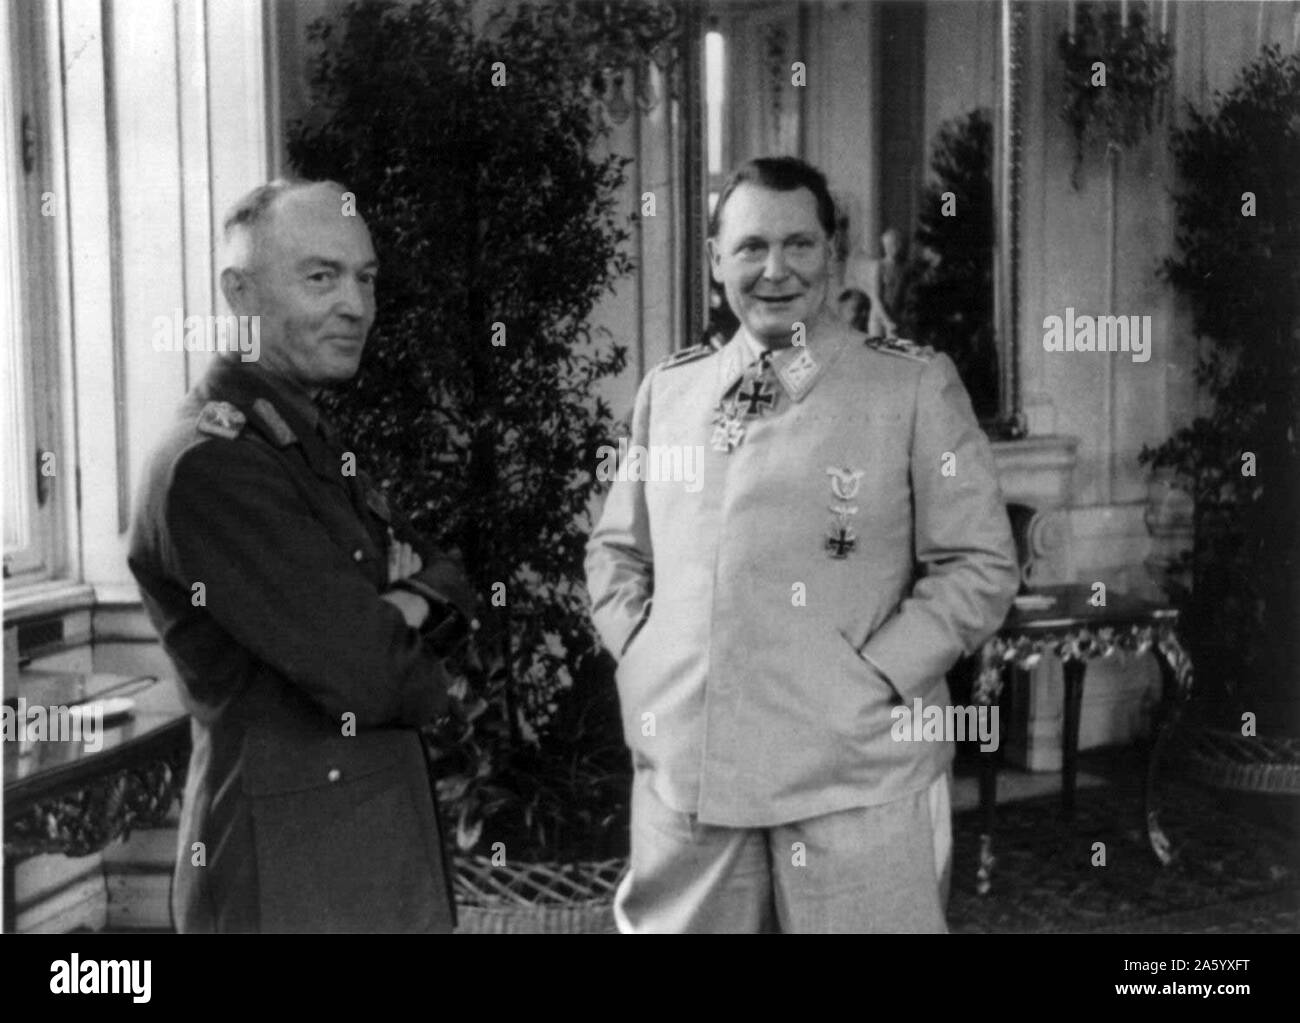 Photographie d'Ion Antonescu (1882-1946) et Hermann Göring (1893-1946) au Palais du Belvédère, Vienne, Autriche. Datée 1941 Banque D'Images